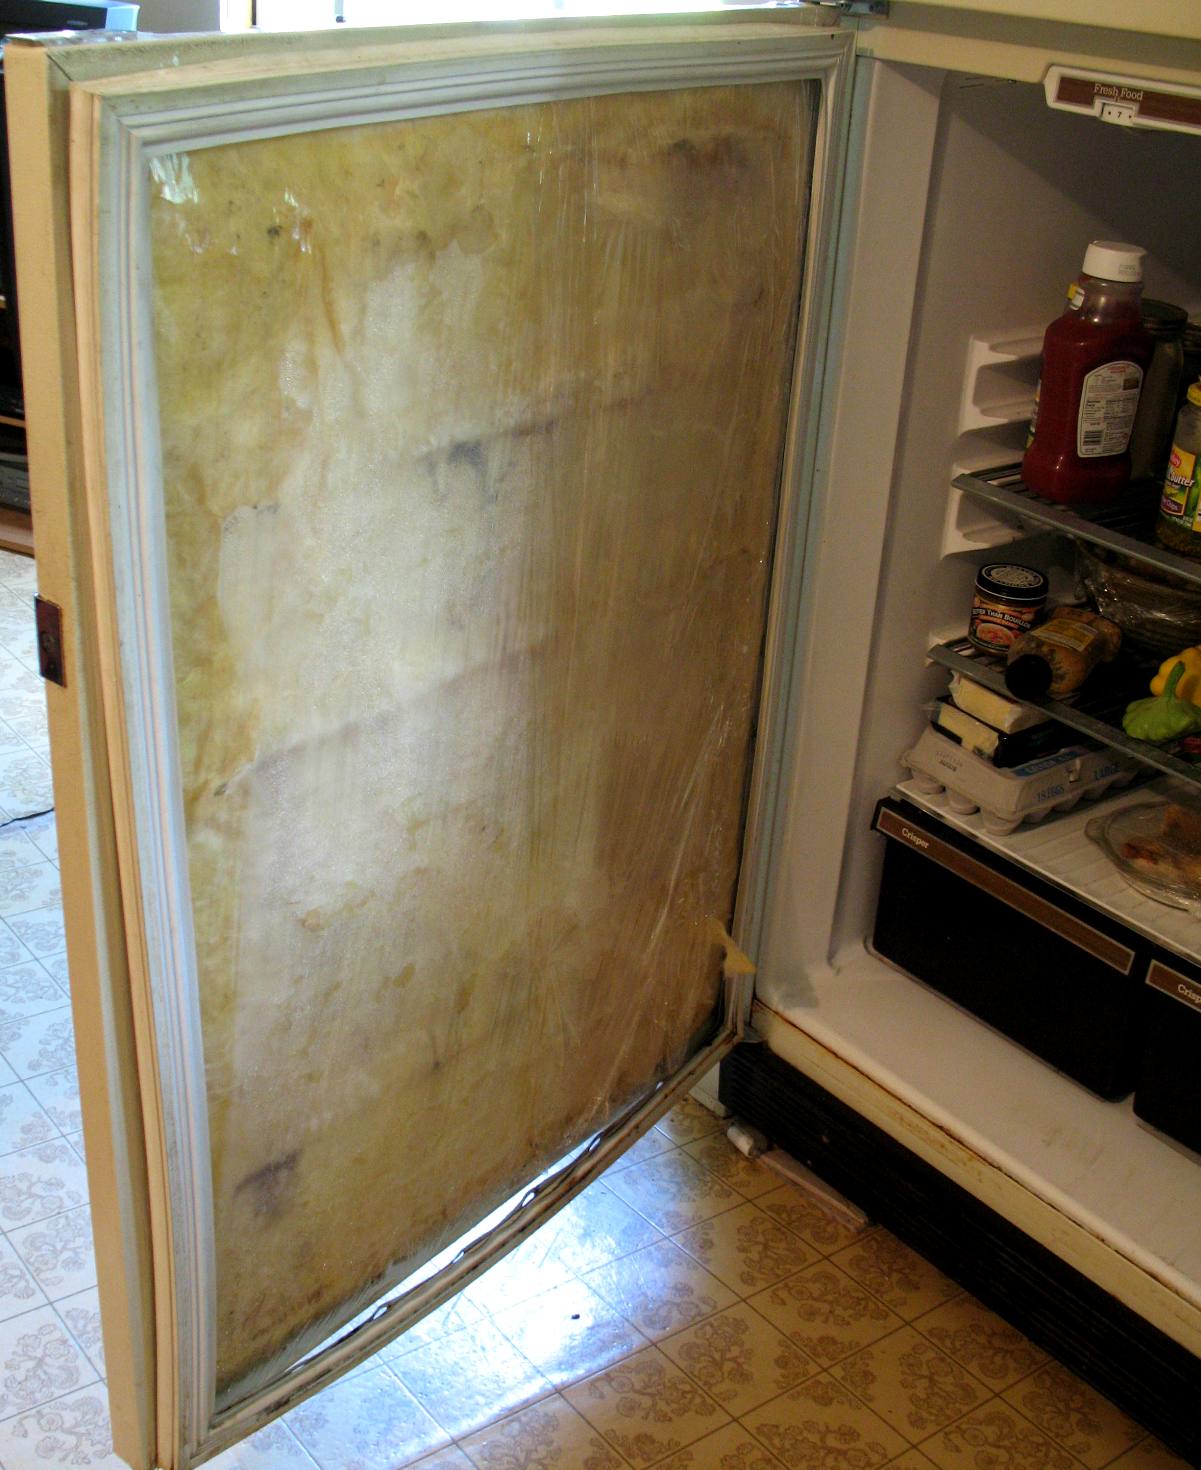 fridge door